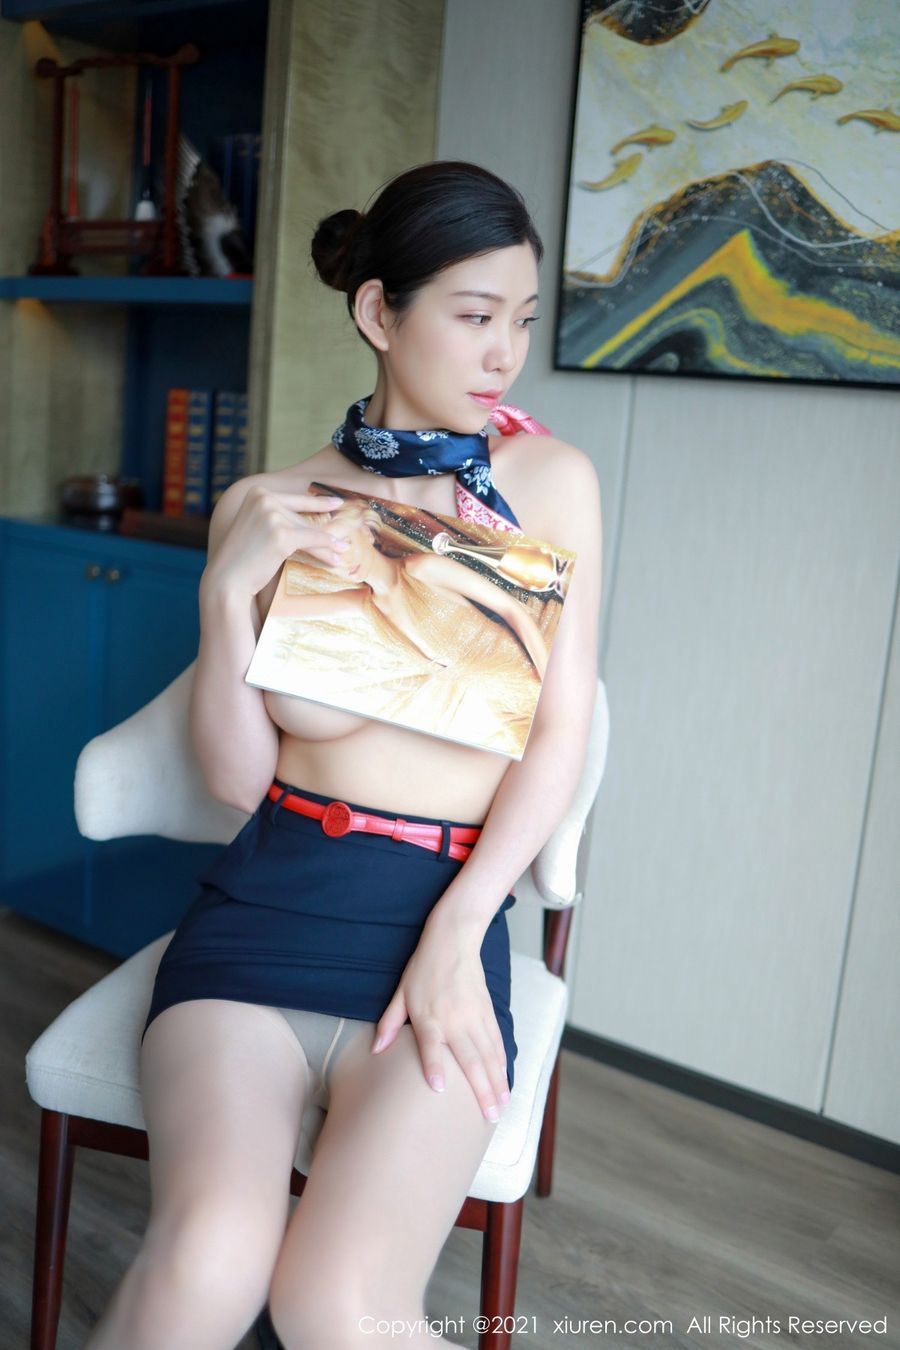 美女模特李雅柔高挑身材空姐制服内衣系列性感写真